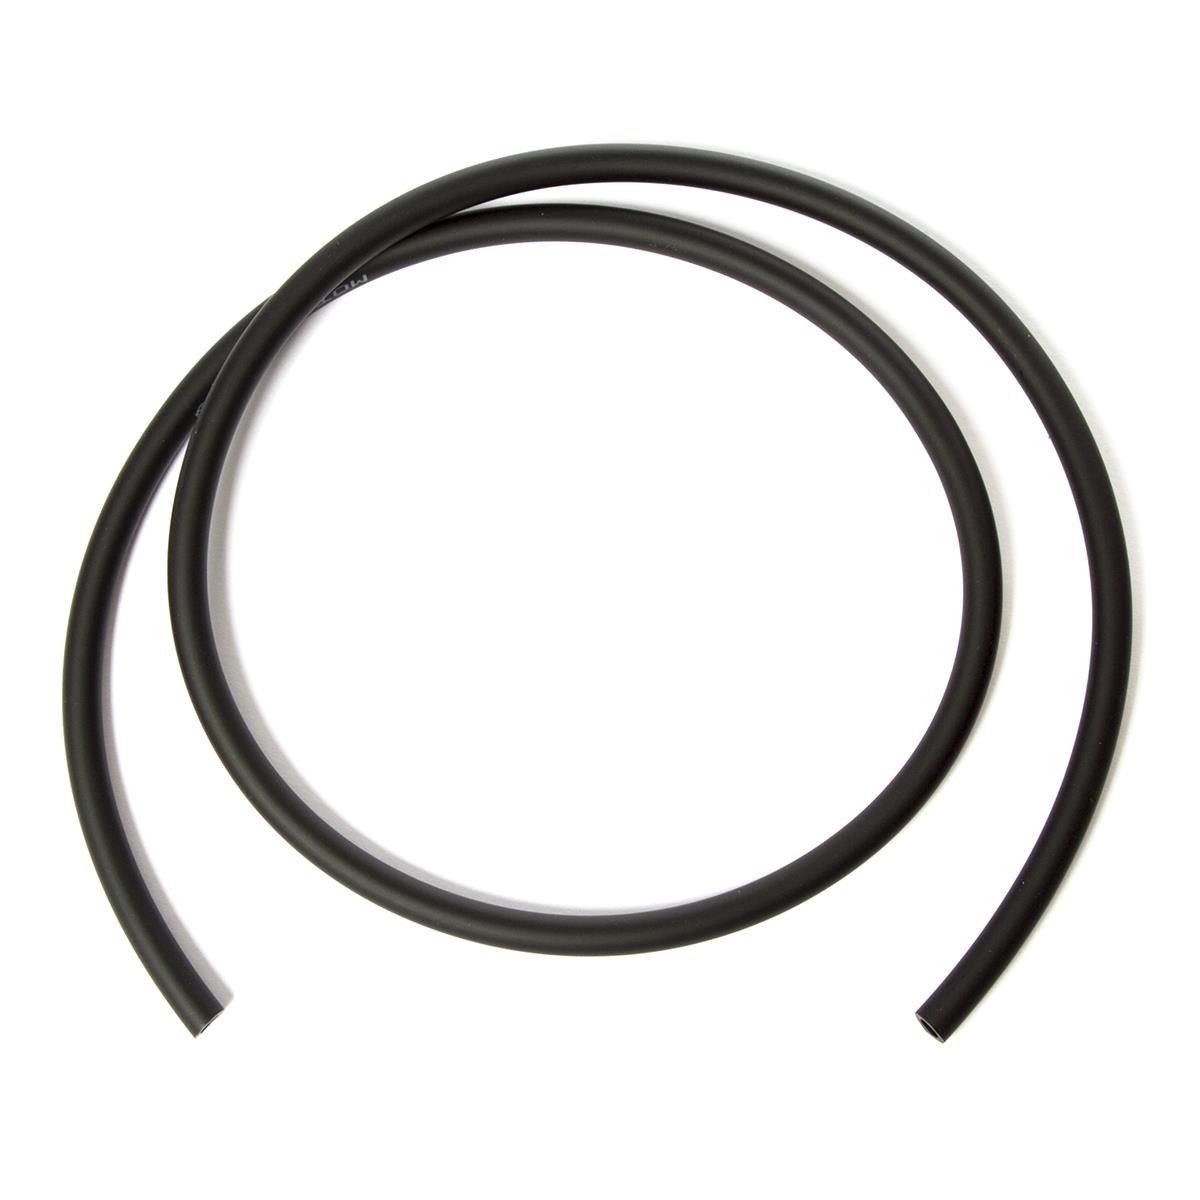 Motion Pro fuel hose 4.8 x 7.9 mm Black, 91 cm long